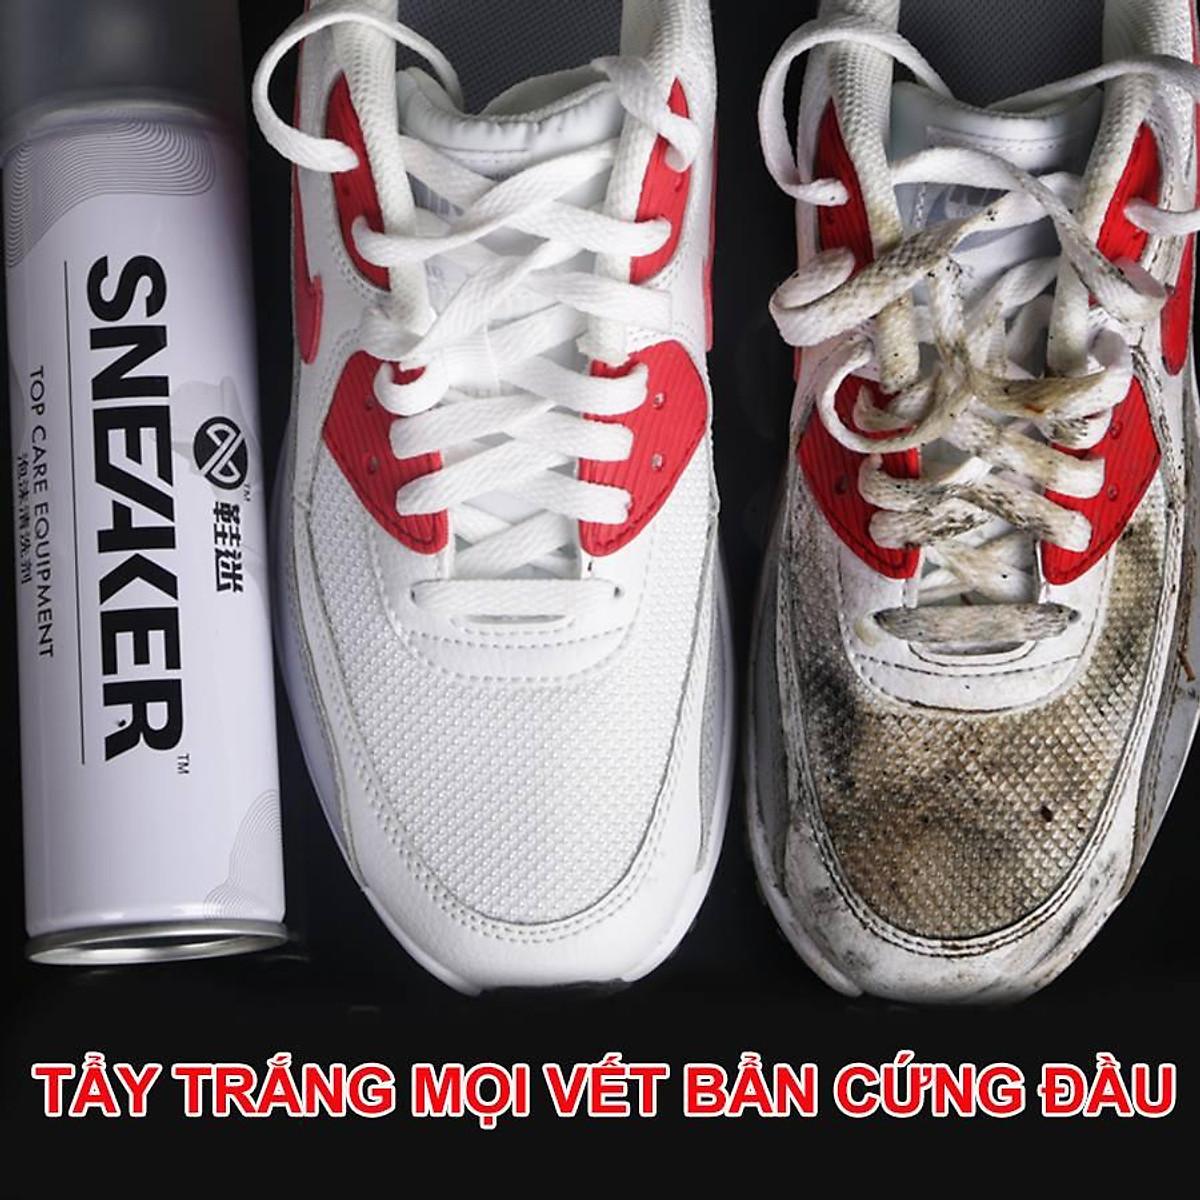 Chai xịt bọt làm sạch giày Sneaker Hando 300ml - Bình xịt bọt làm sạch chuyên cho giày Sneaker, Tẩy trắng giày Thể Thao